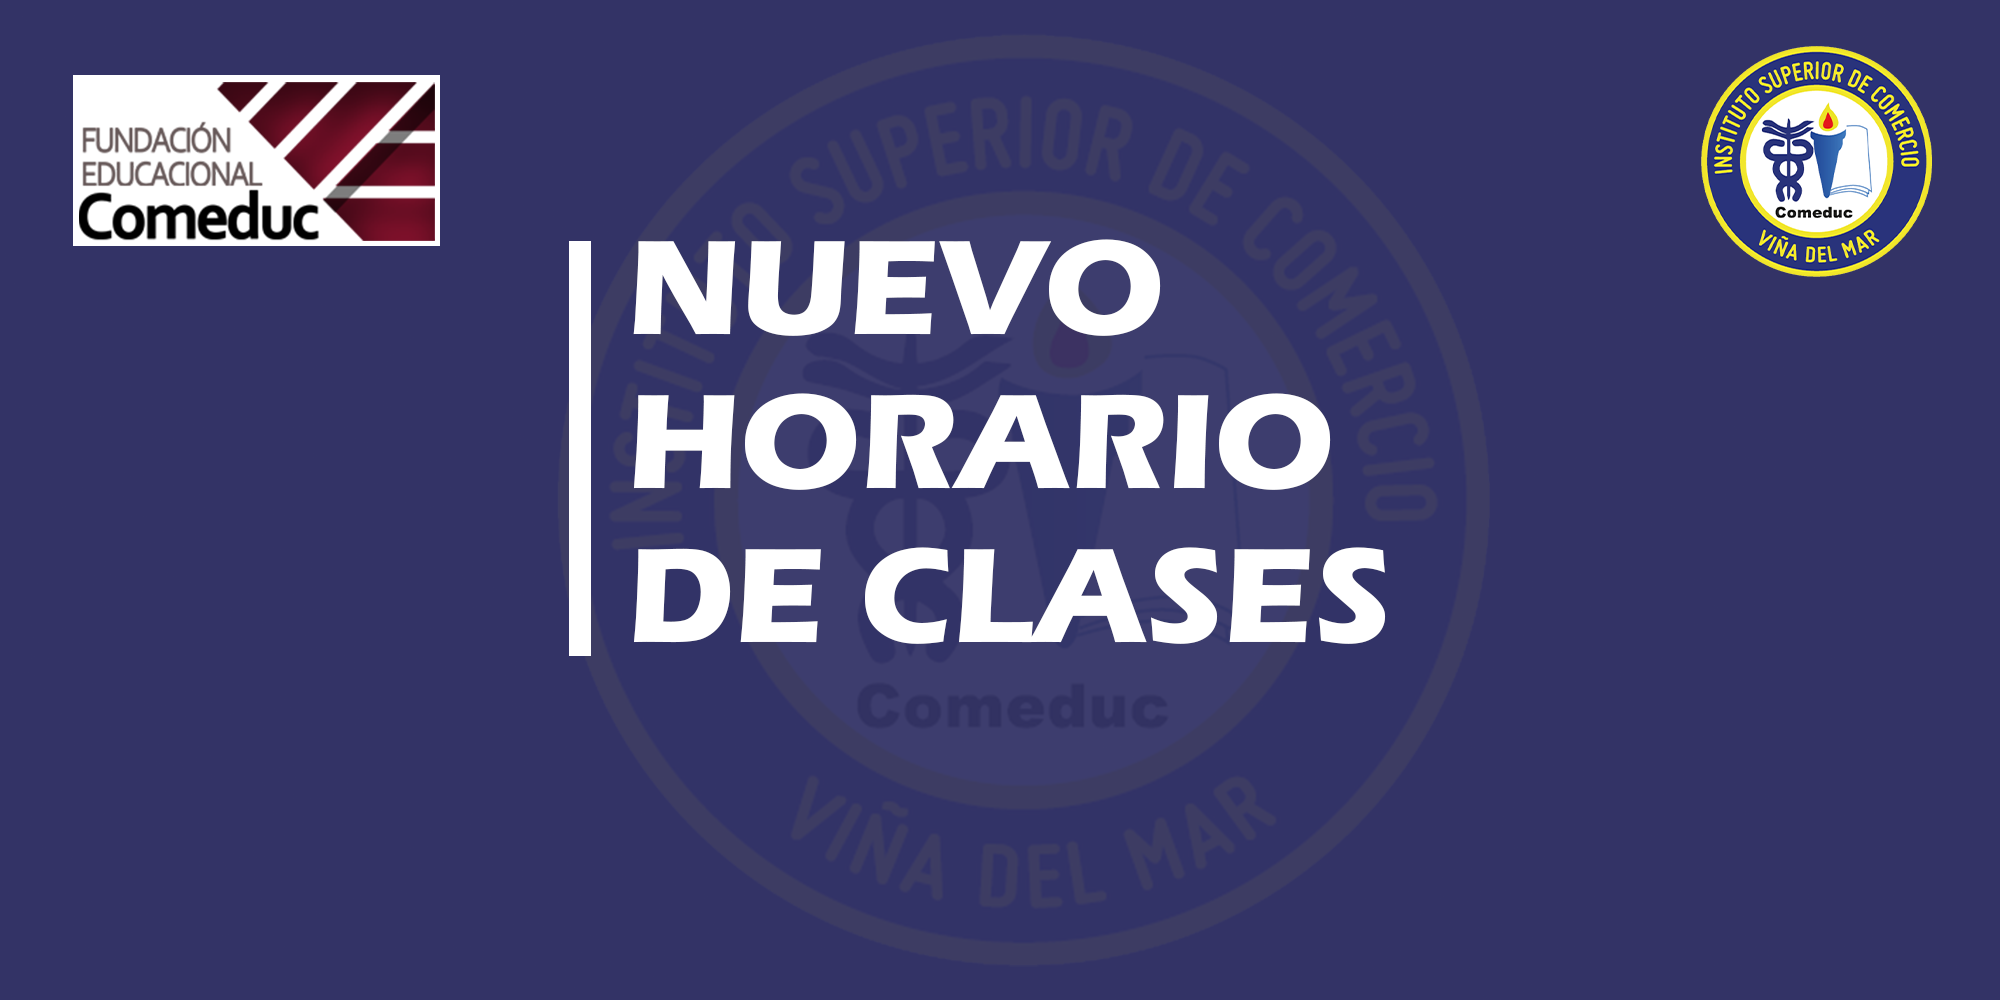 NUEVO HORARIO DE CLASES